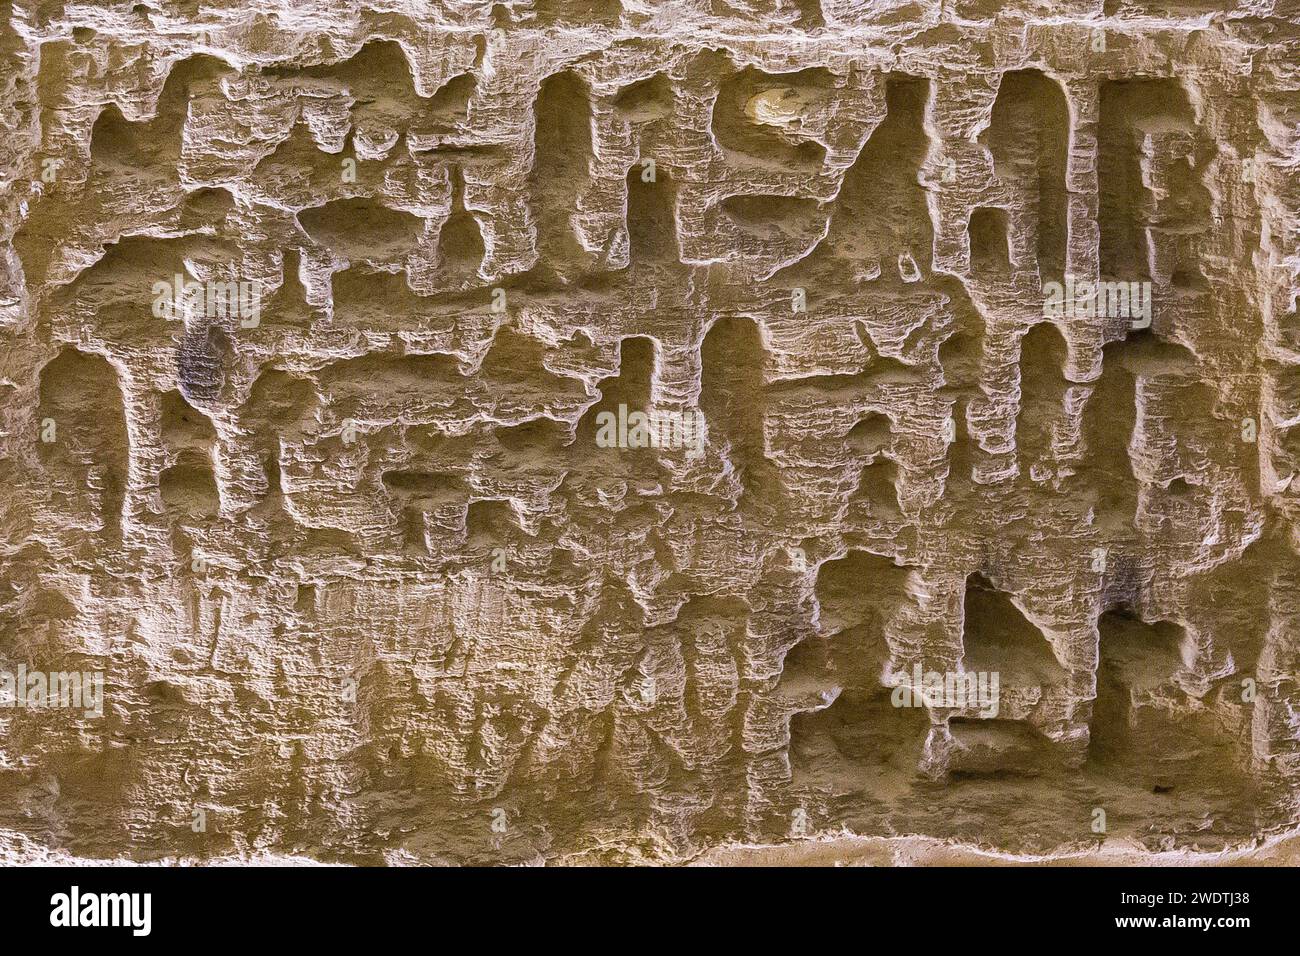 Egitto, Saqqara, Serapeum necropolis : testi di dedica e nicchie per stele. Foto Stock